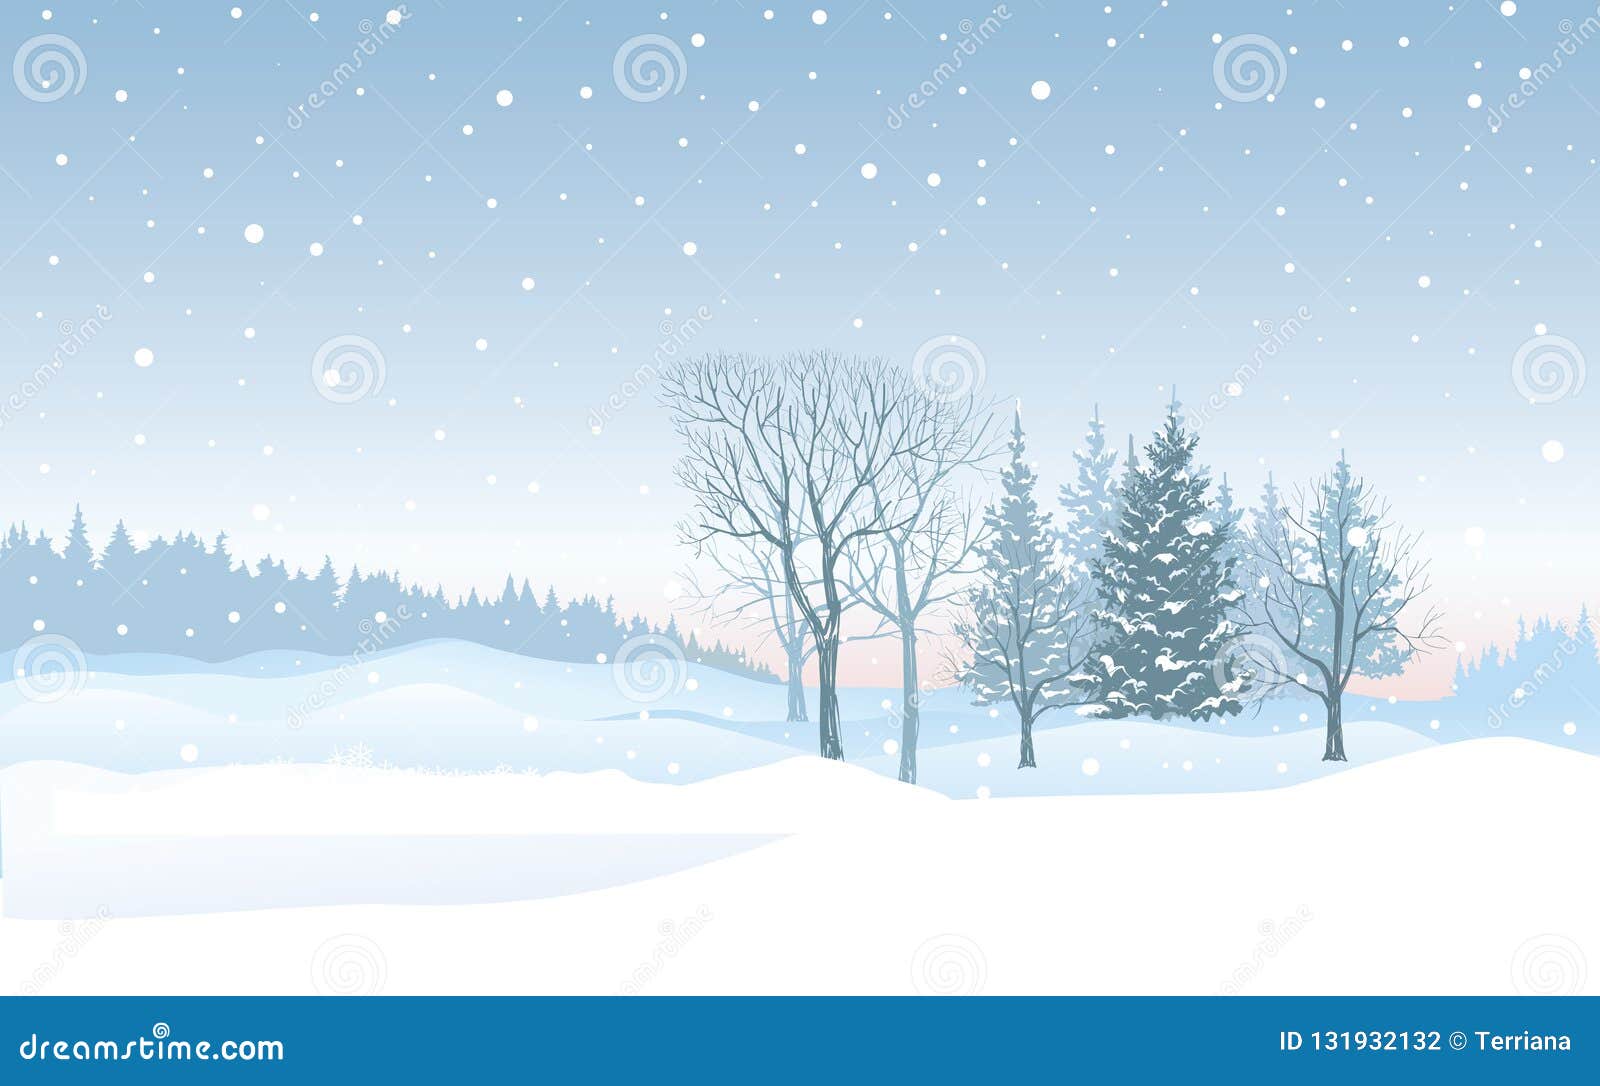 圣诞节降雪背景雪冬天风景快活的chri 库存例证 插画包括有抽象 环境 背包 模式 看板卡